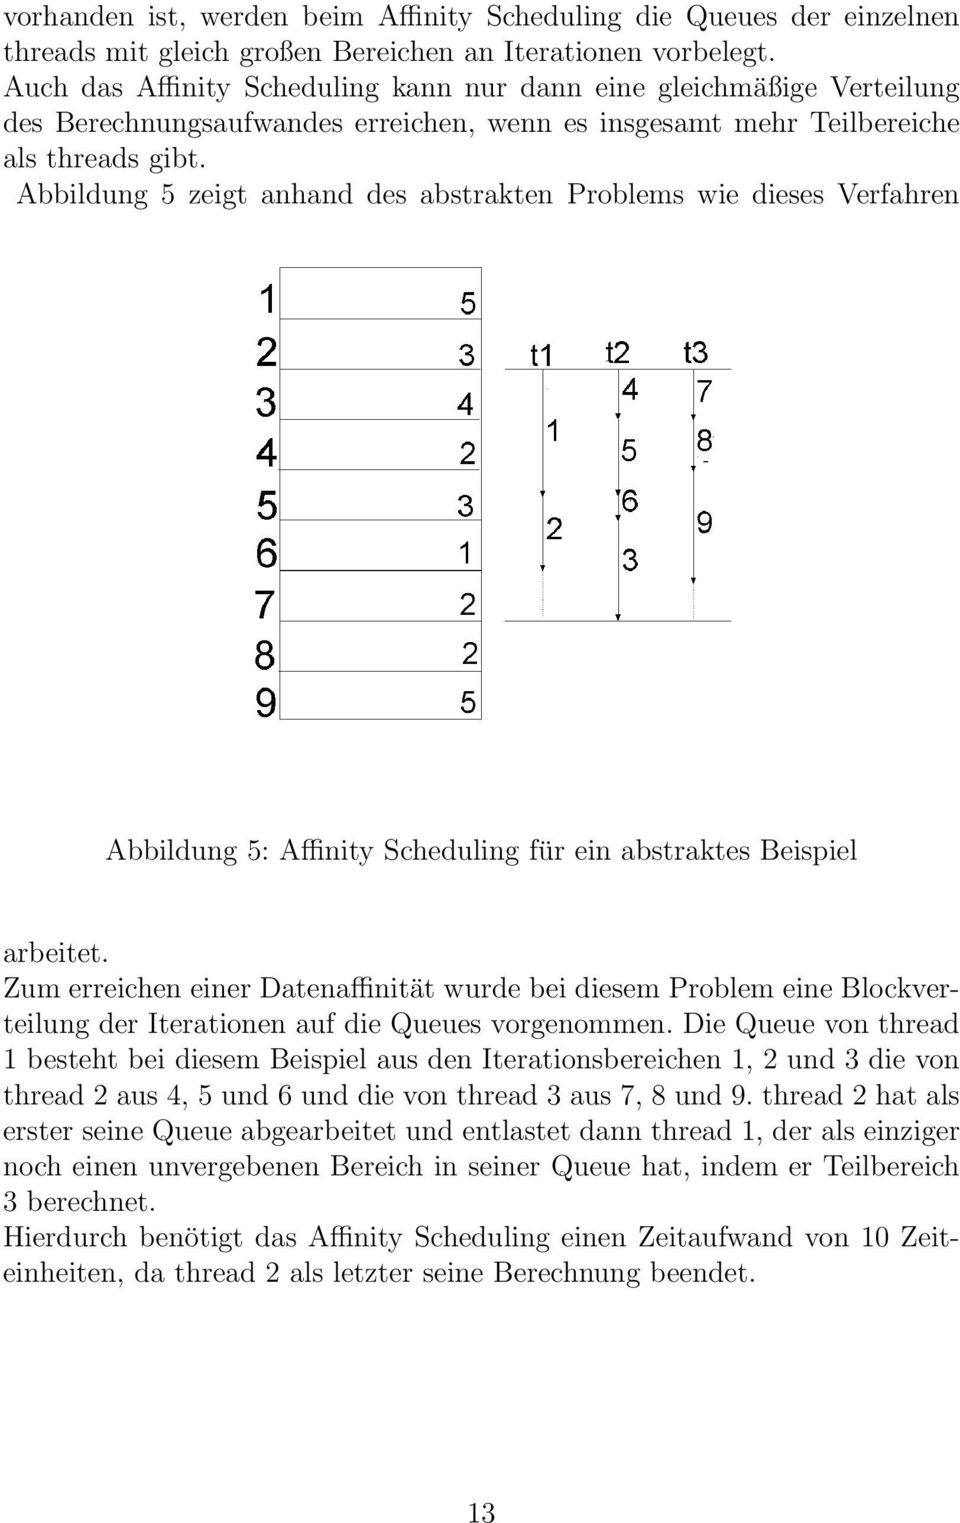 Abbildung 5 zeigt anhand des abstrakten Problems wie dieses Verfahren Abbildung 5: Affinity Scheduling für ein abstraktes Beispiel arbeitet.